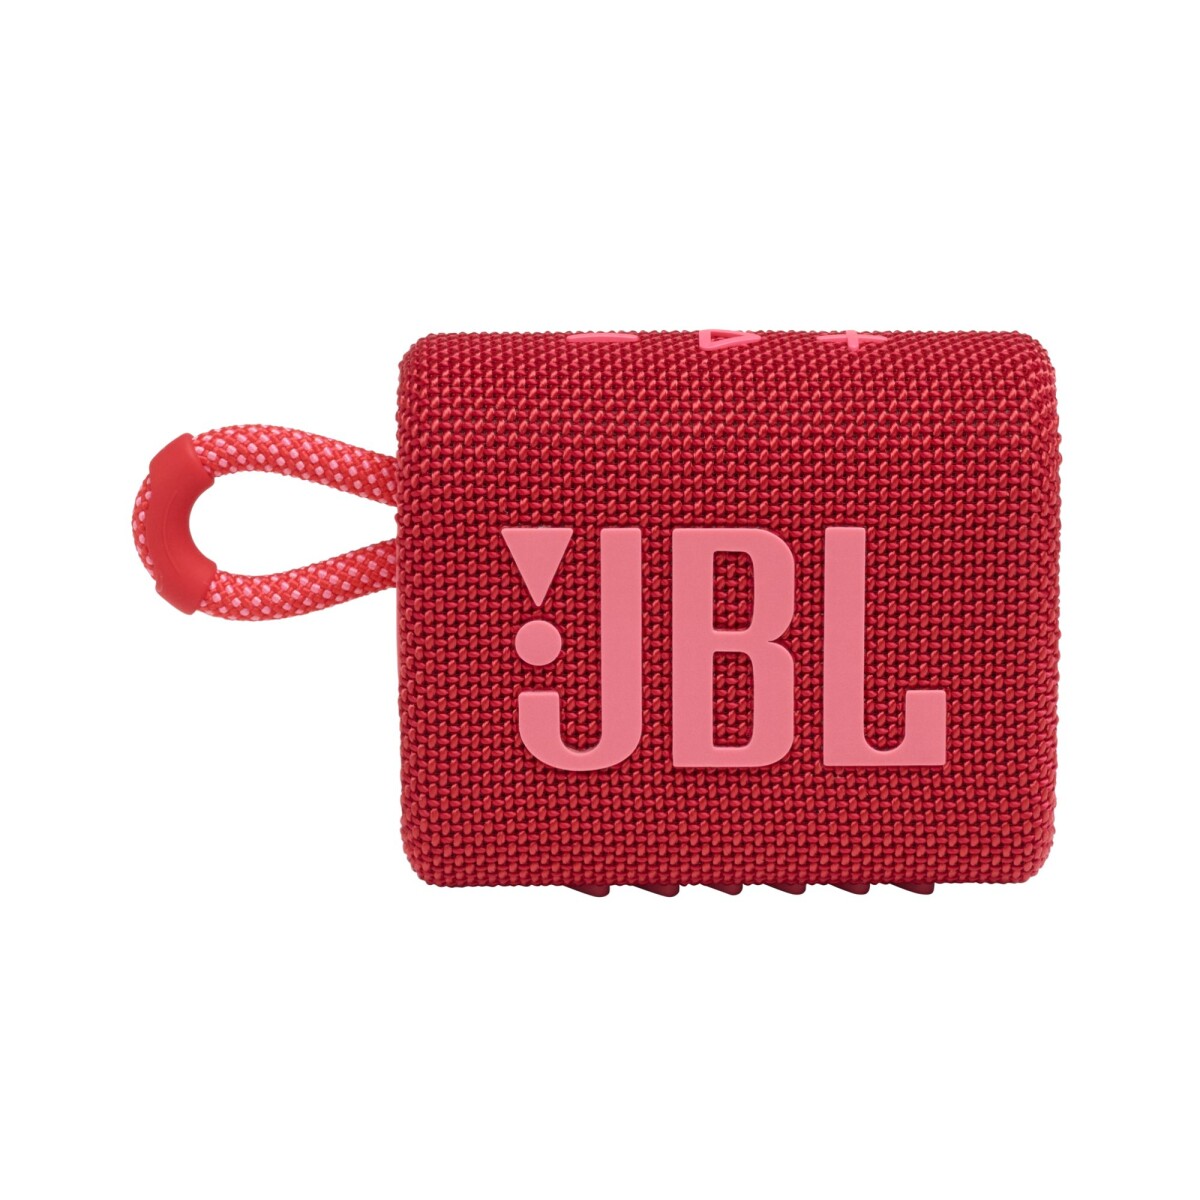 Speaker portátil JBL Go 3 - Rojo 